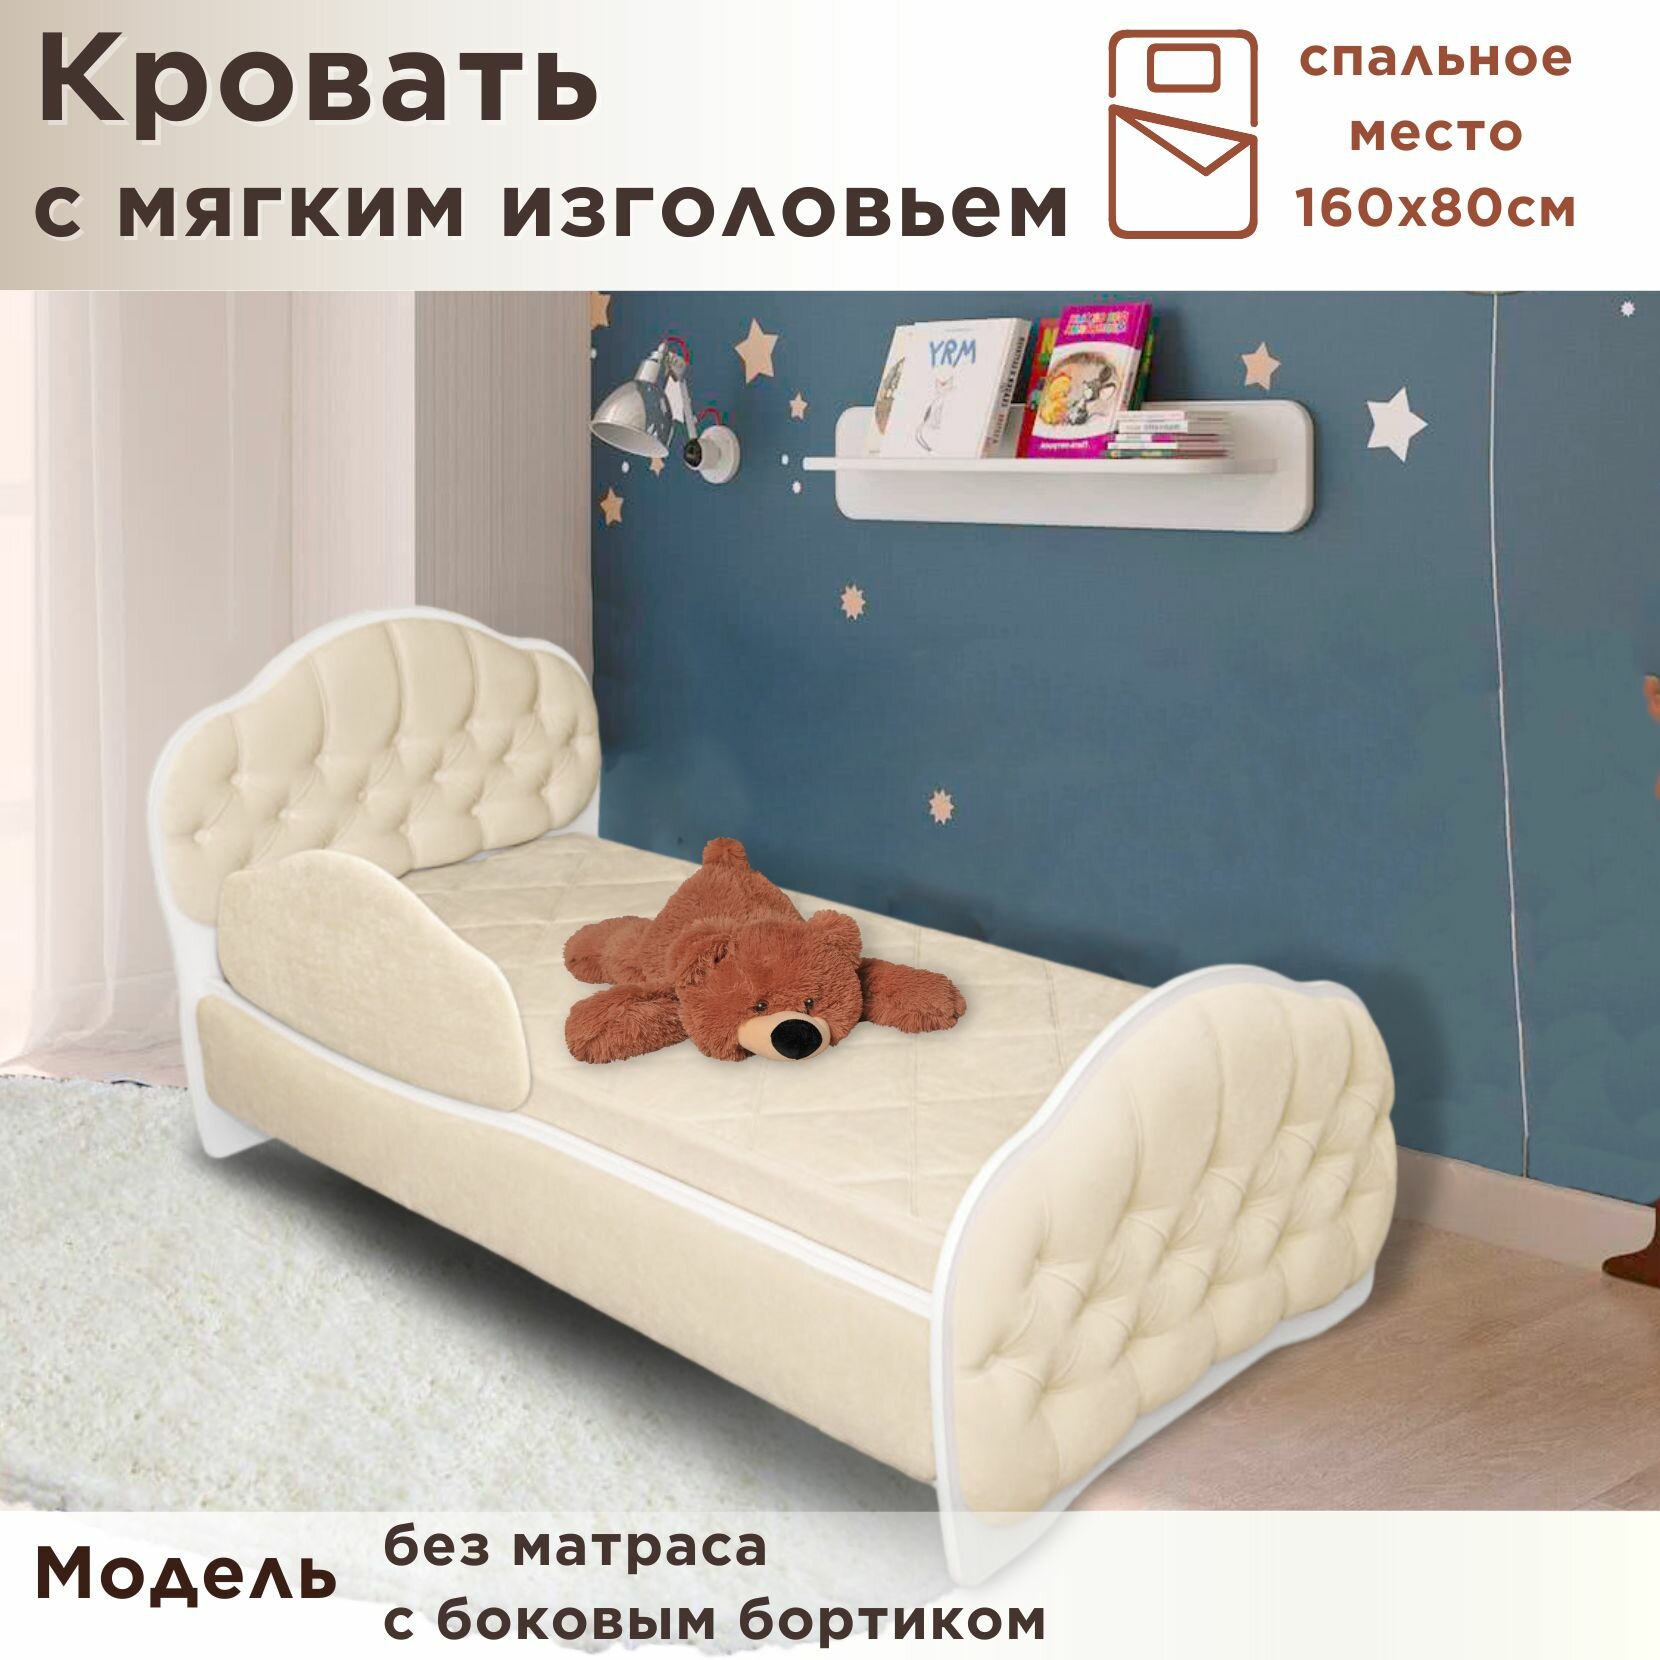 Кровать детская Гармония 160х80 см, Teddy 321, кровать + бортик